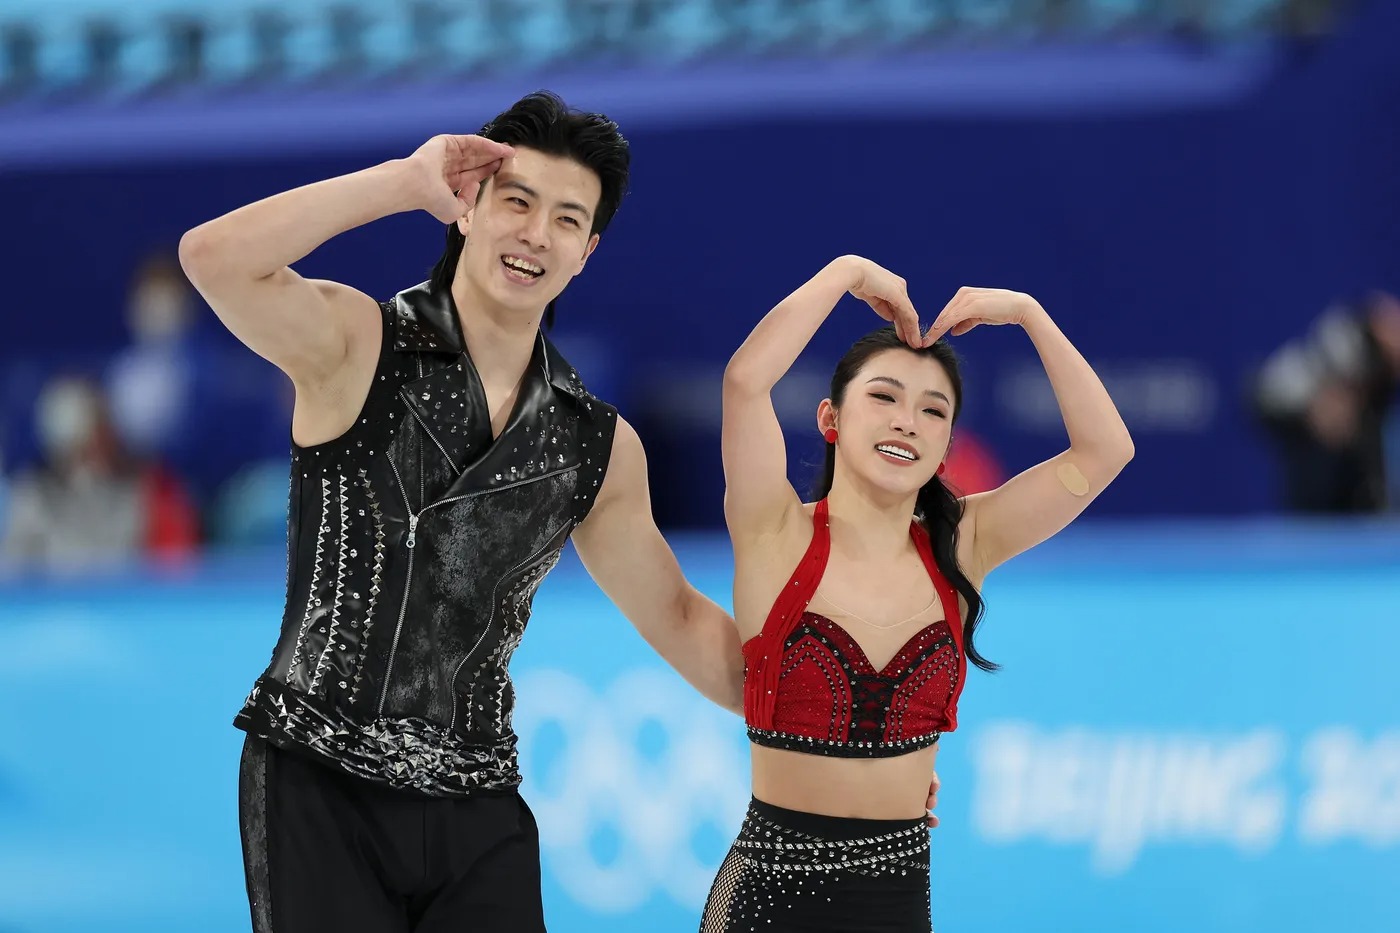 Shiyue Wang Xinyu Liu olympics 2022 - 6 trang phục đôi “nung chảy” sàn băng nghệ thuật tại Olympic 2022